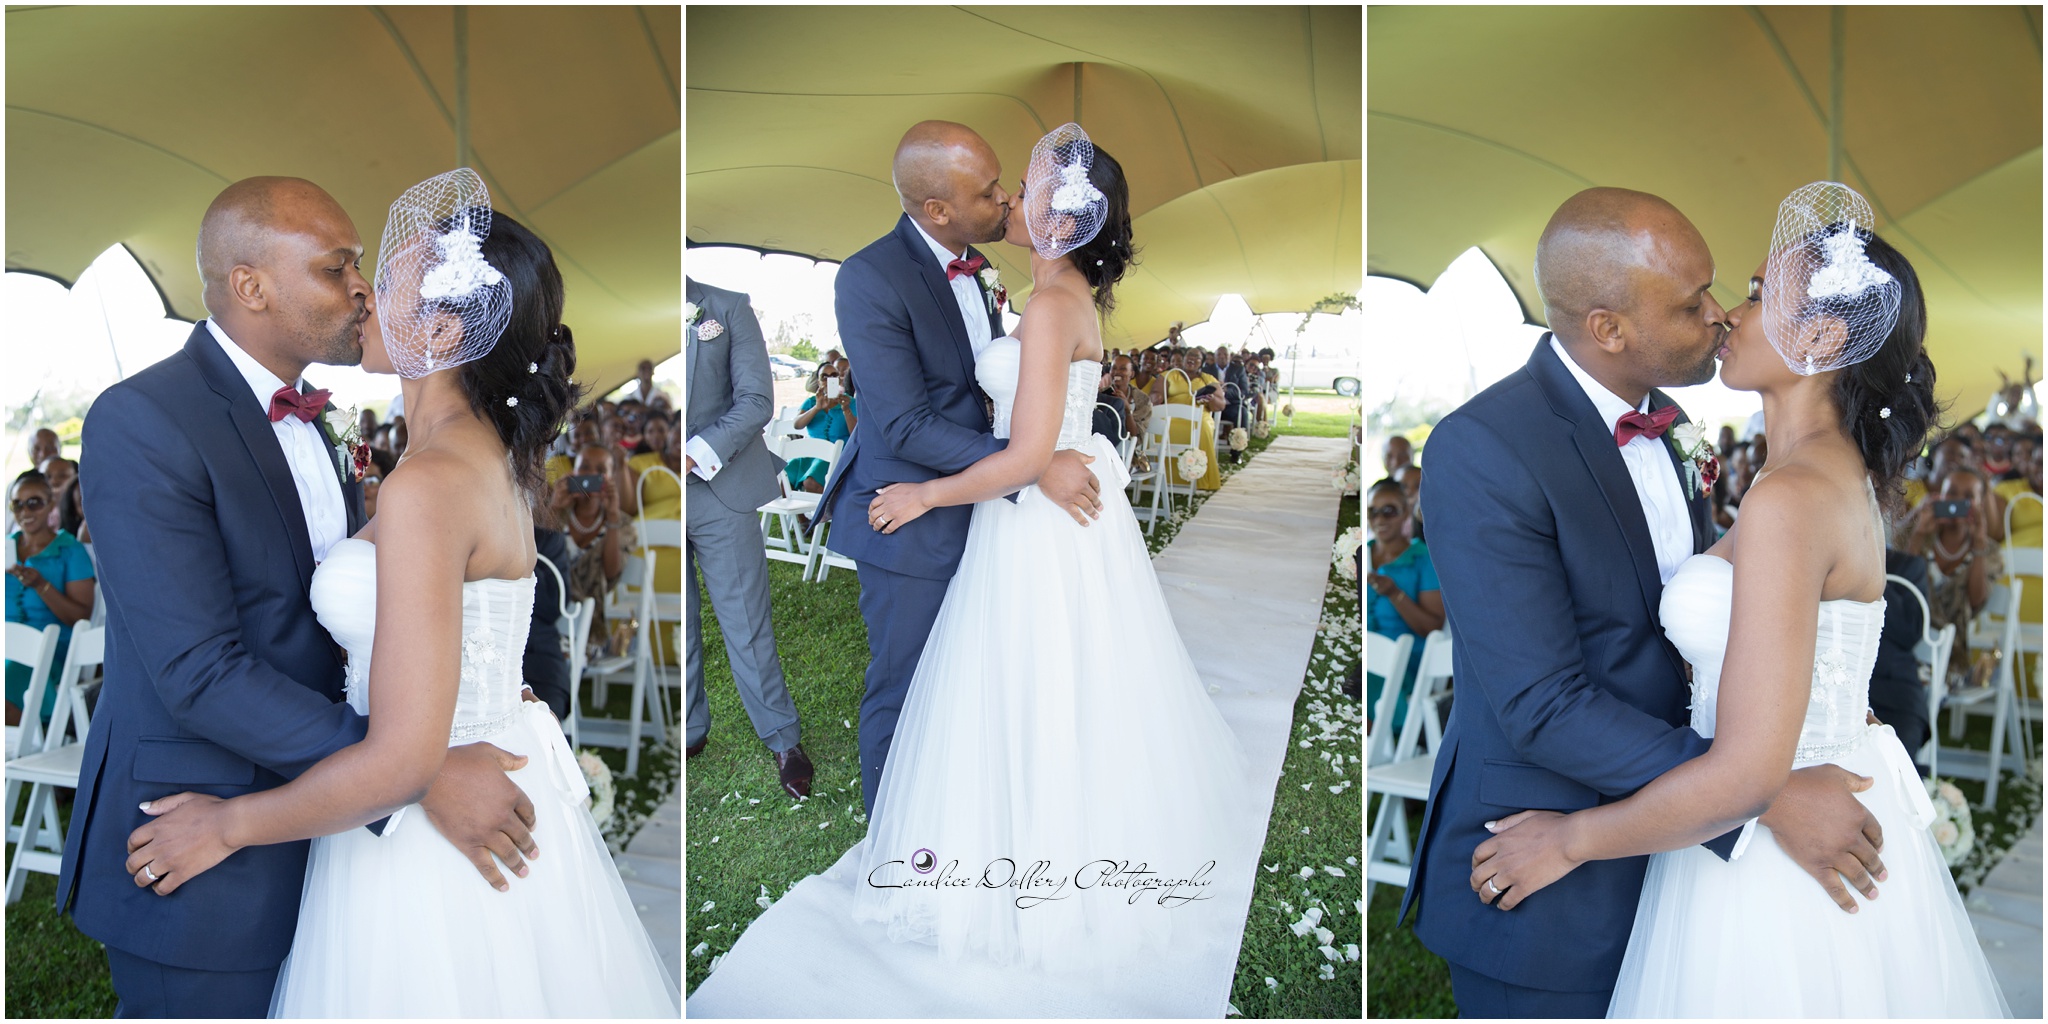 Buyi & Nathi's Wedding - Candice Dollery Photography_8399